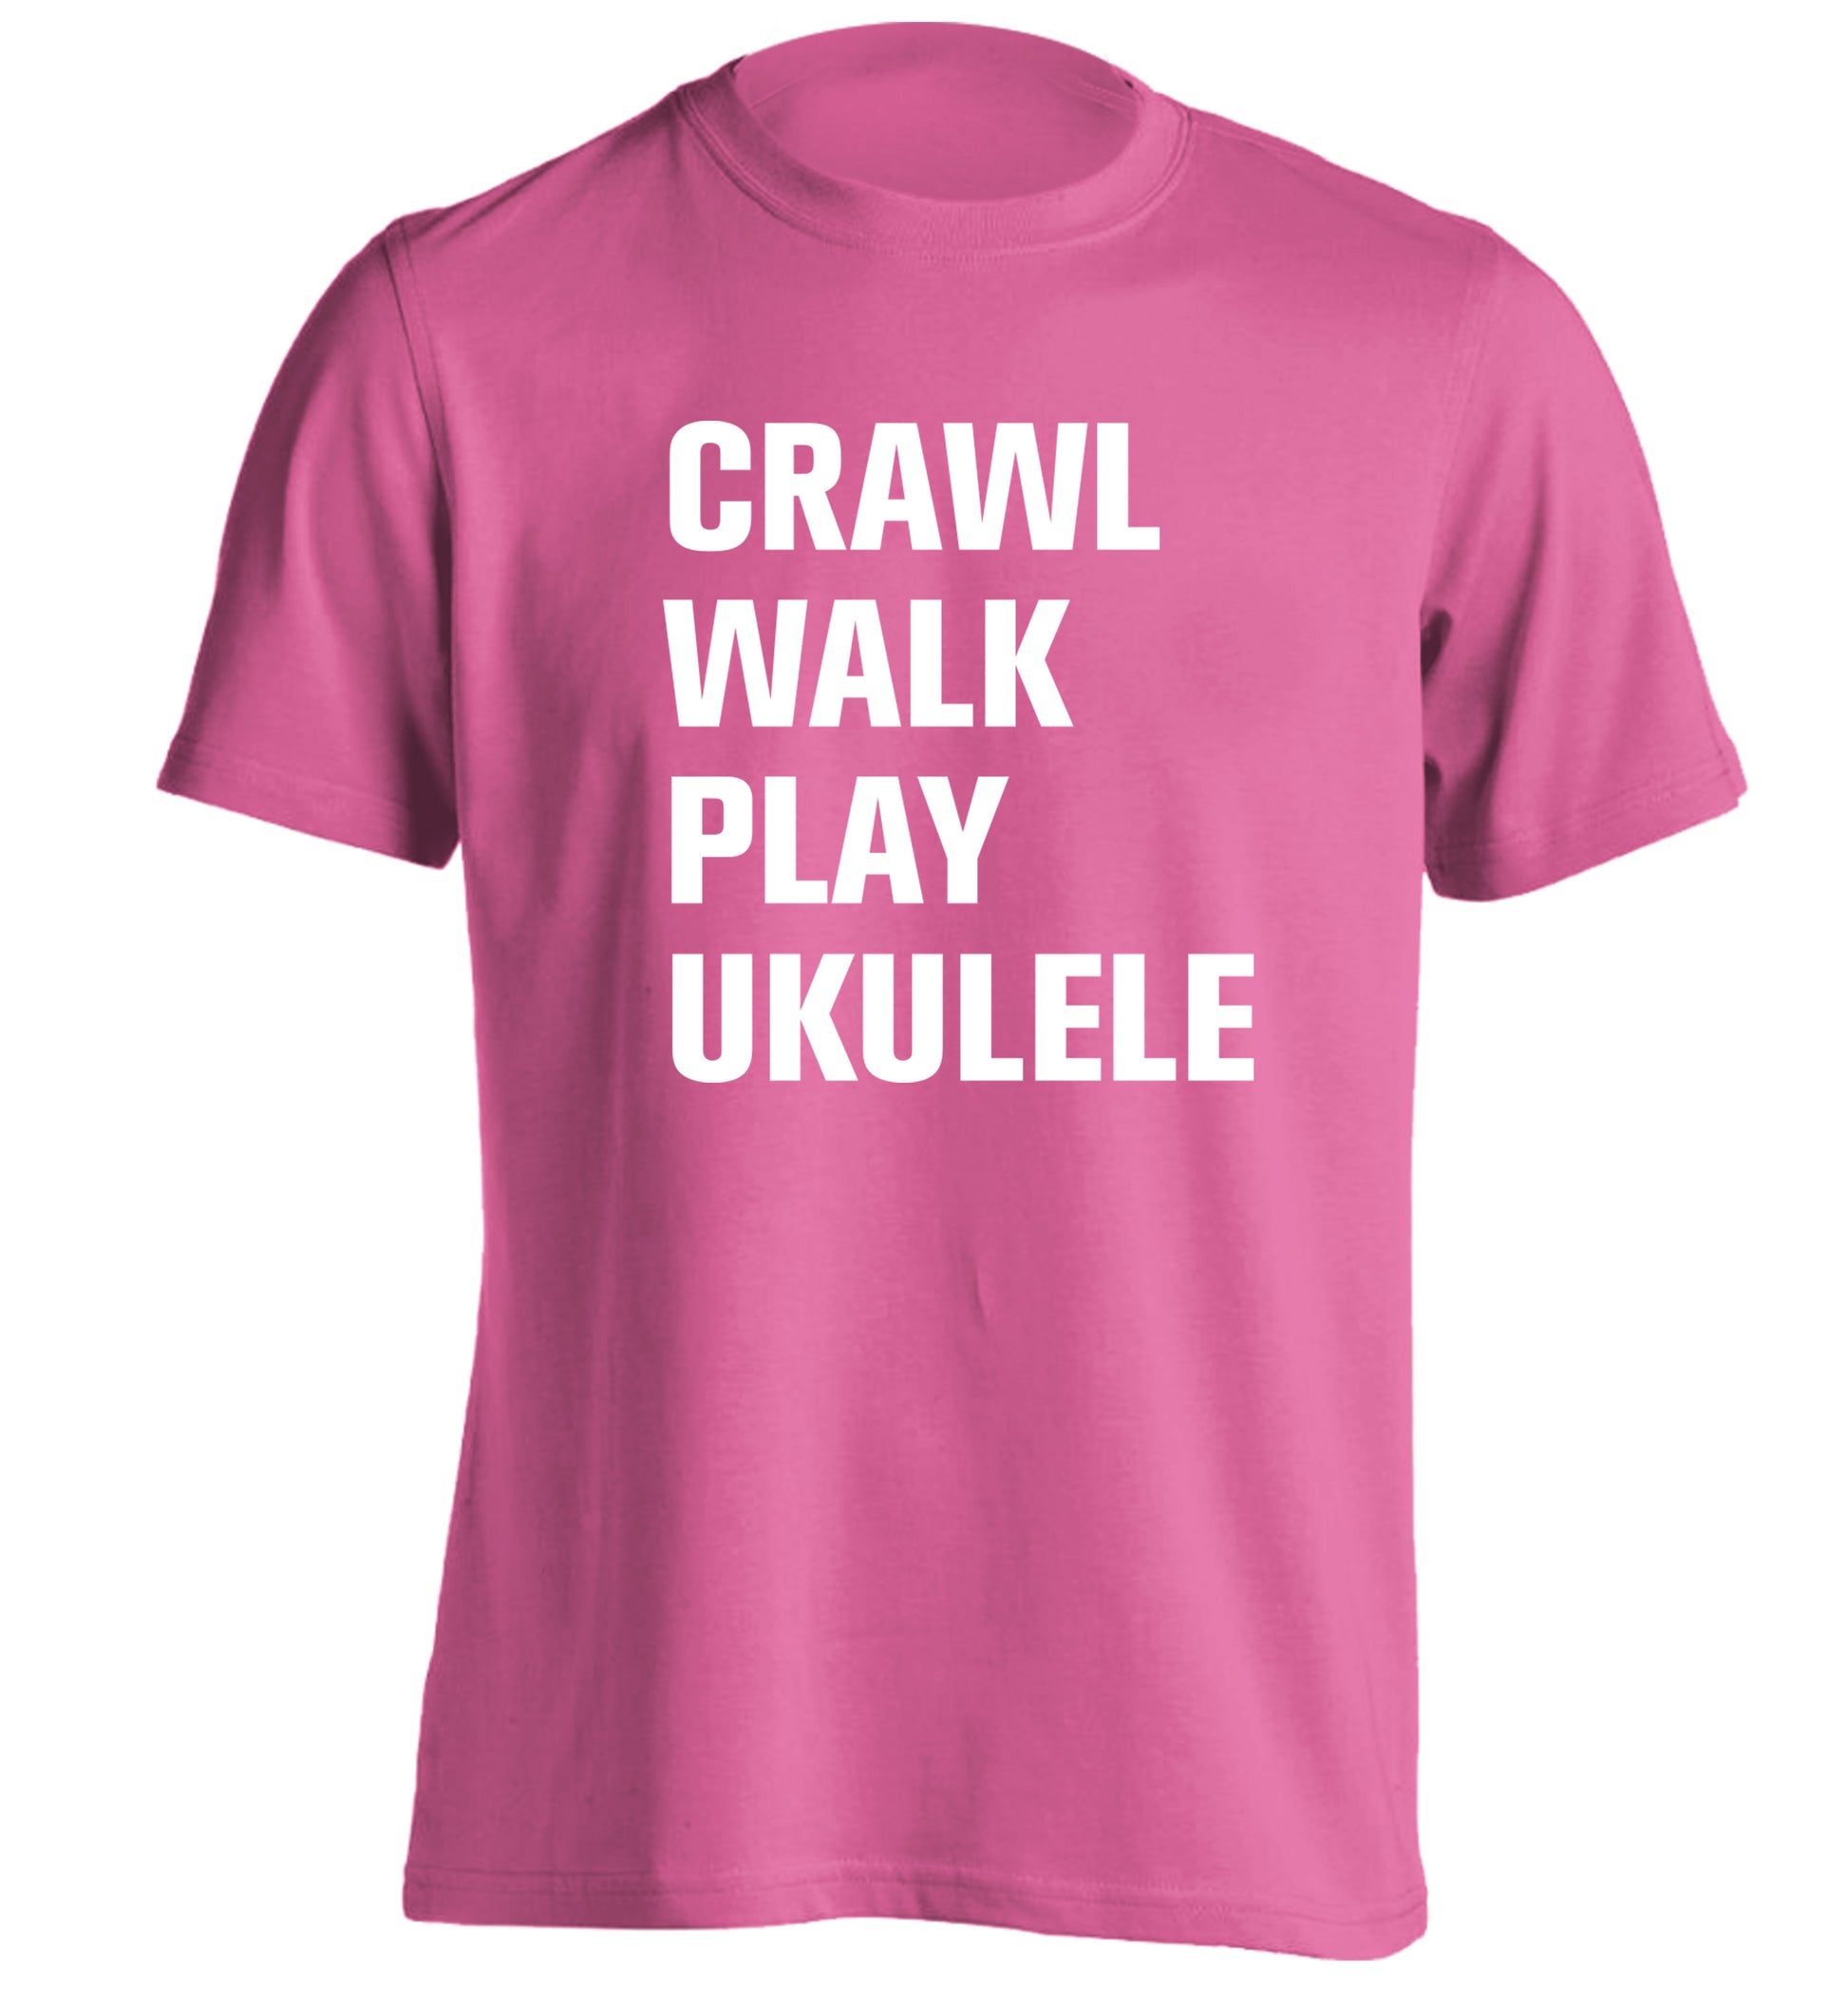 Crawl walk play ukulele adults unisex pink Tshirt 2XL